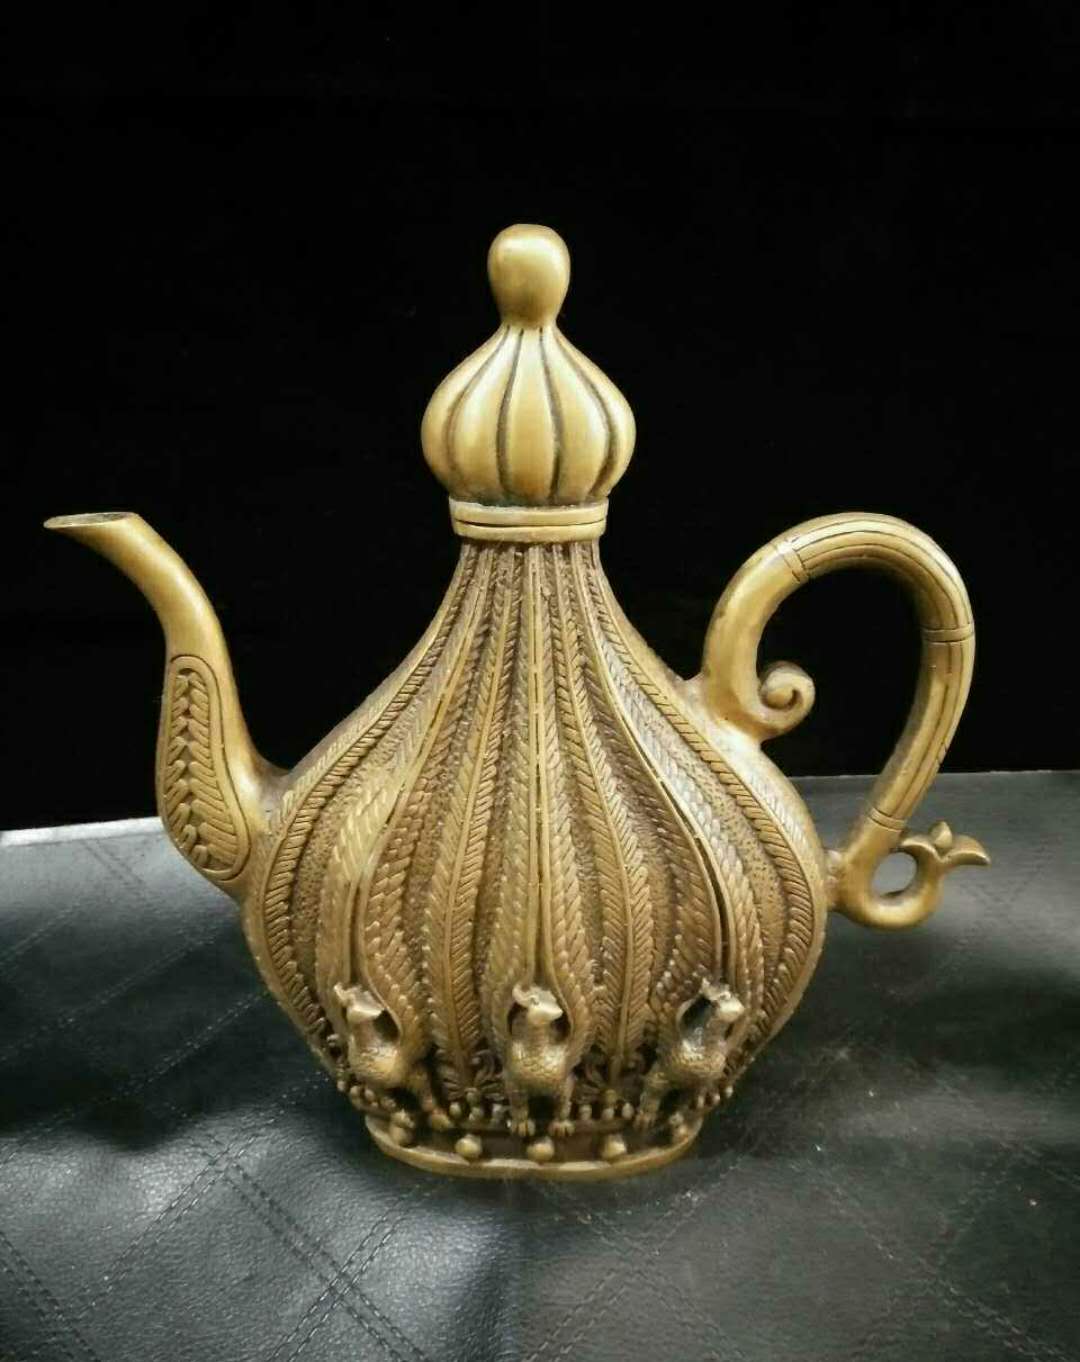 精铜水壶酒壶一把,可做摆件,雕刻精美图案,做工精巧